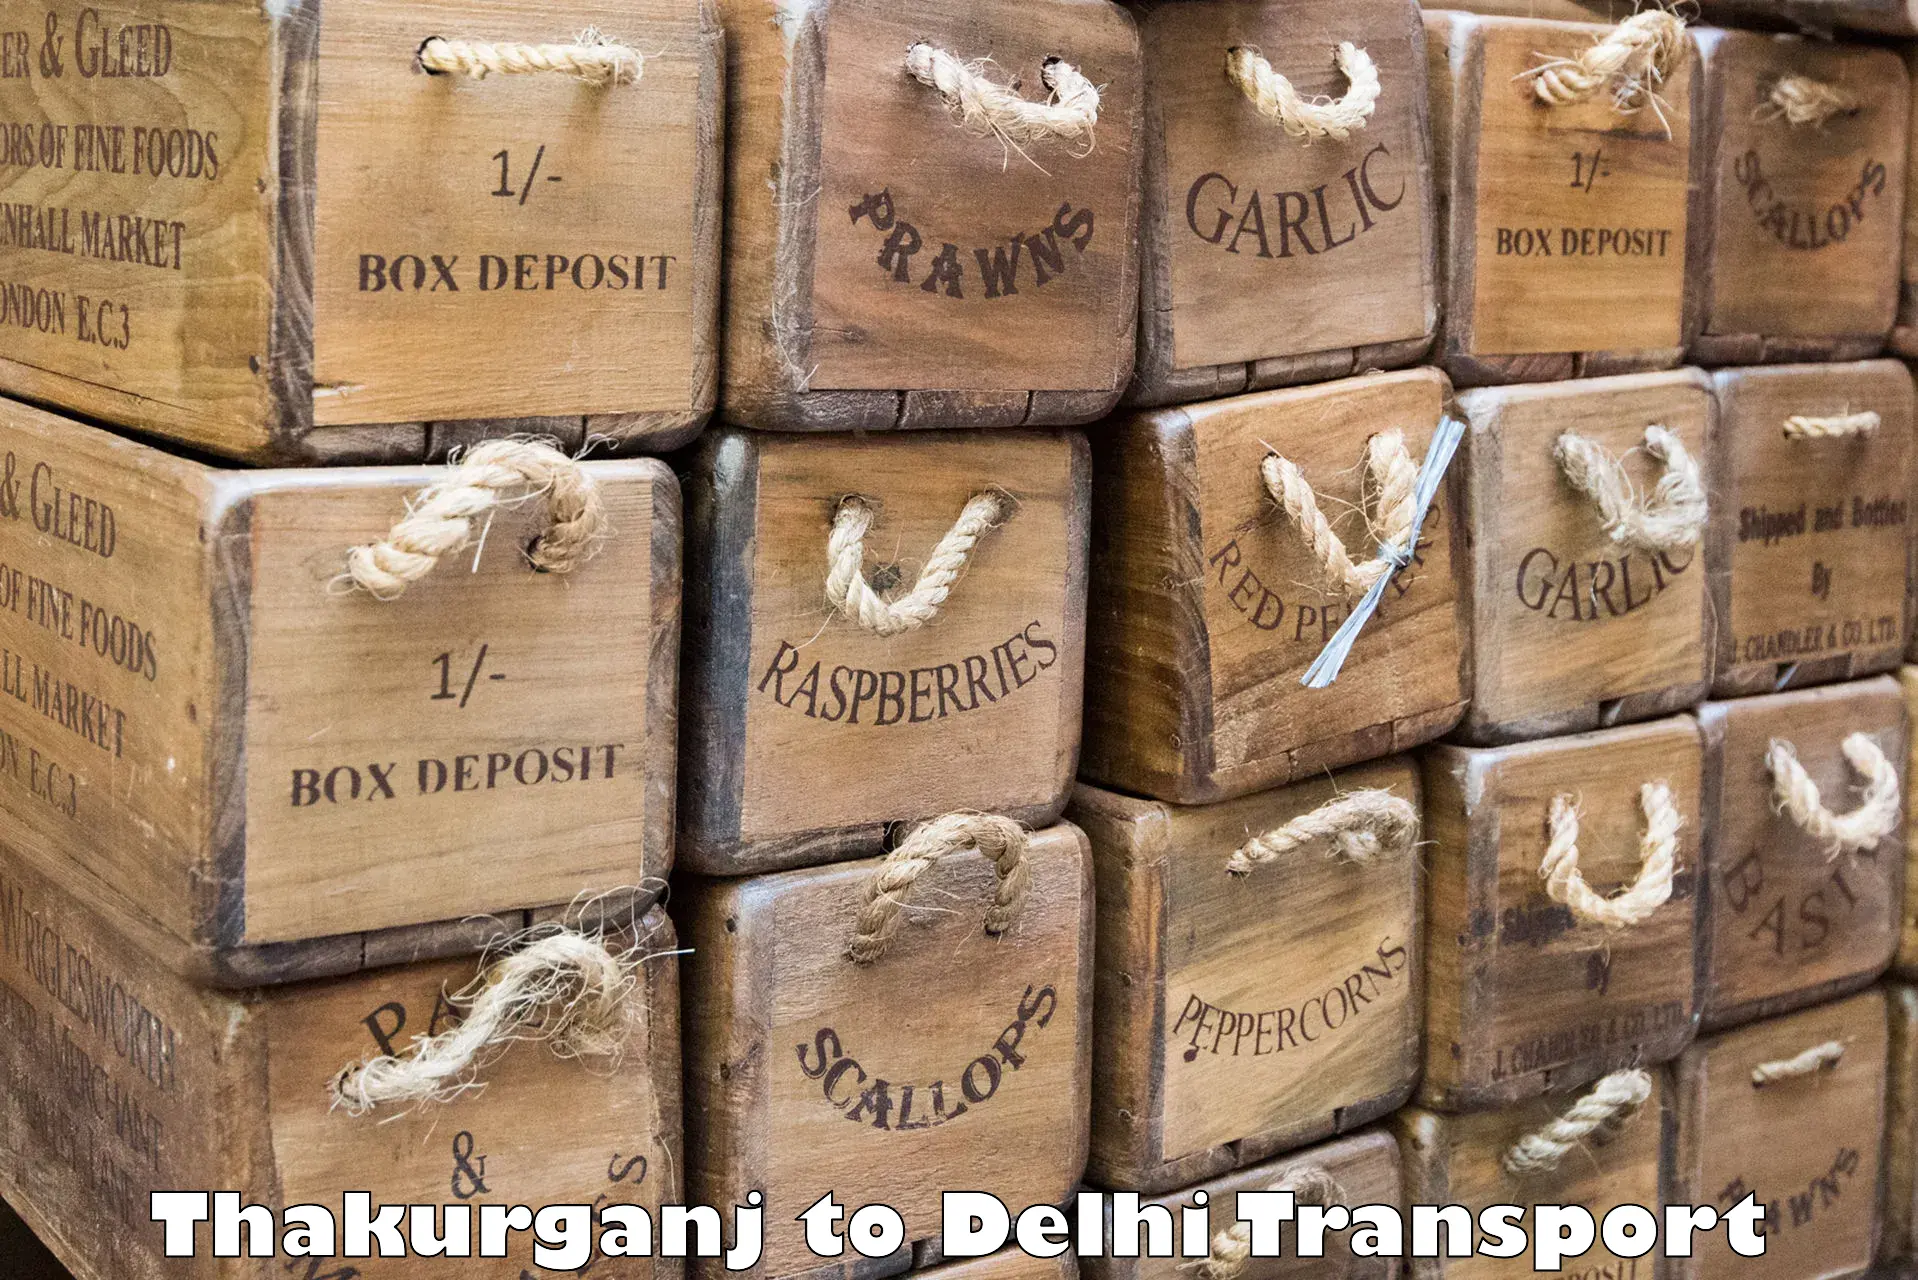 Interstate transport services Thakurganj to Sarojini Nagar